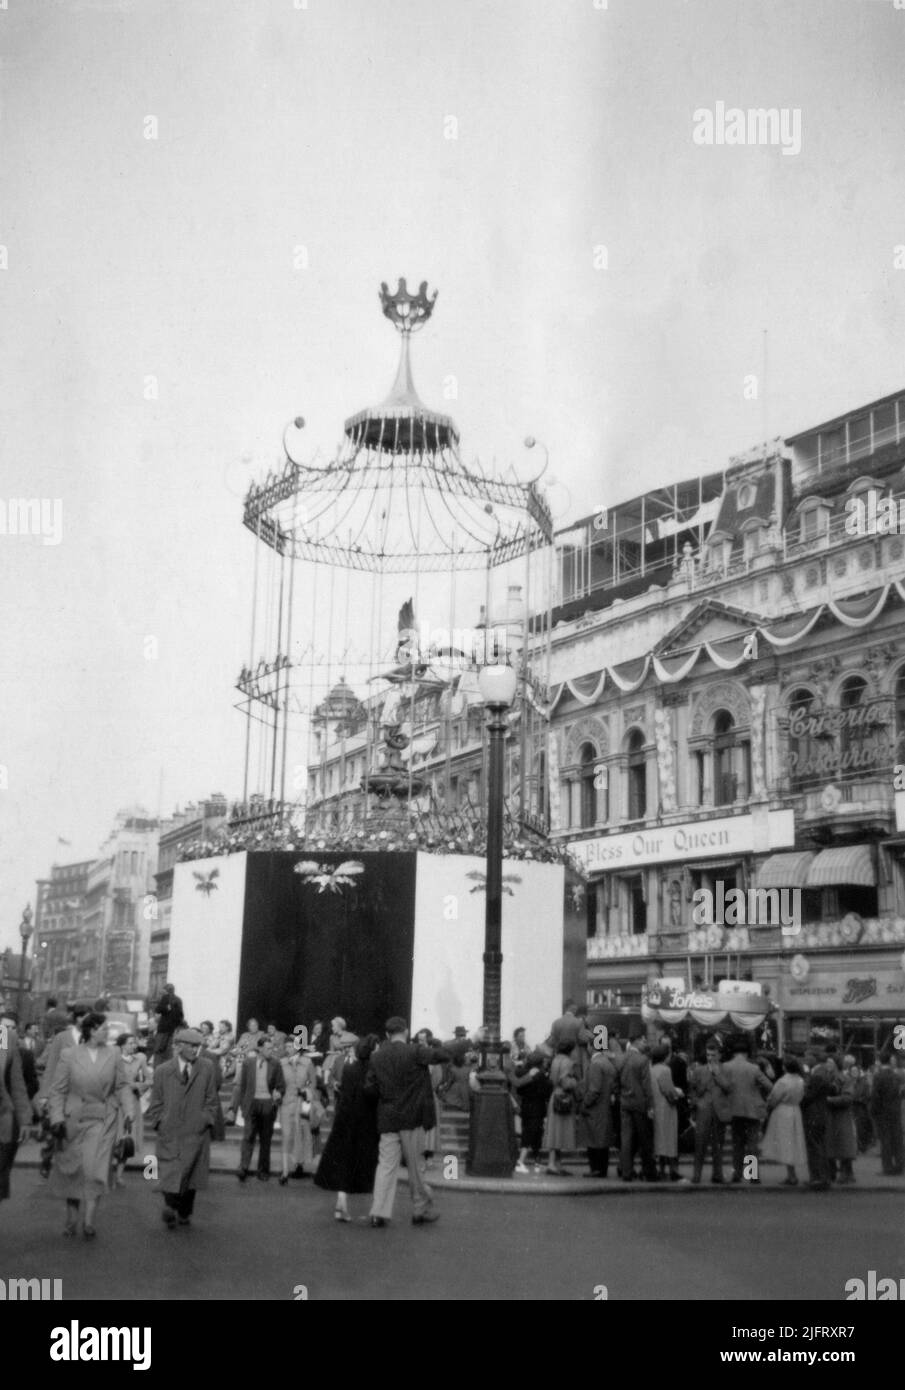 Dekorativer ornamentaler Vogelkäfig, der um die Statue des Eros, Piccadilly Circus, London, während der Feierlichkeiten zur Krönung von Königin Elizabeth II. Errichtet wurde 1953. Entworfen von Sir Hugh Maxwell Casson. Stockfoto